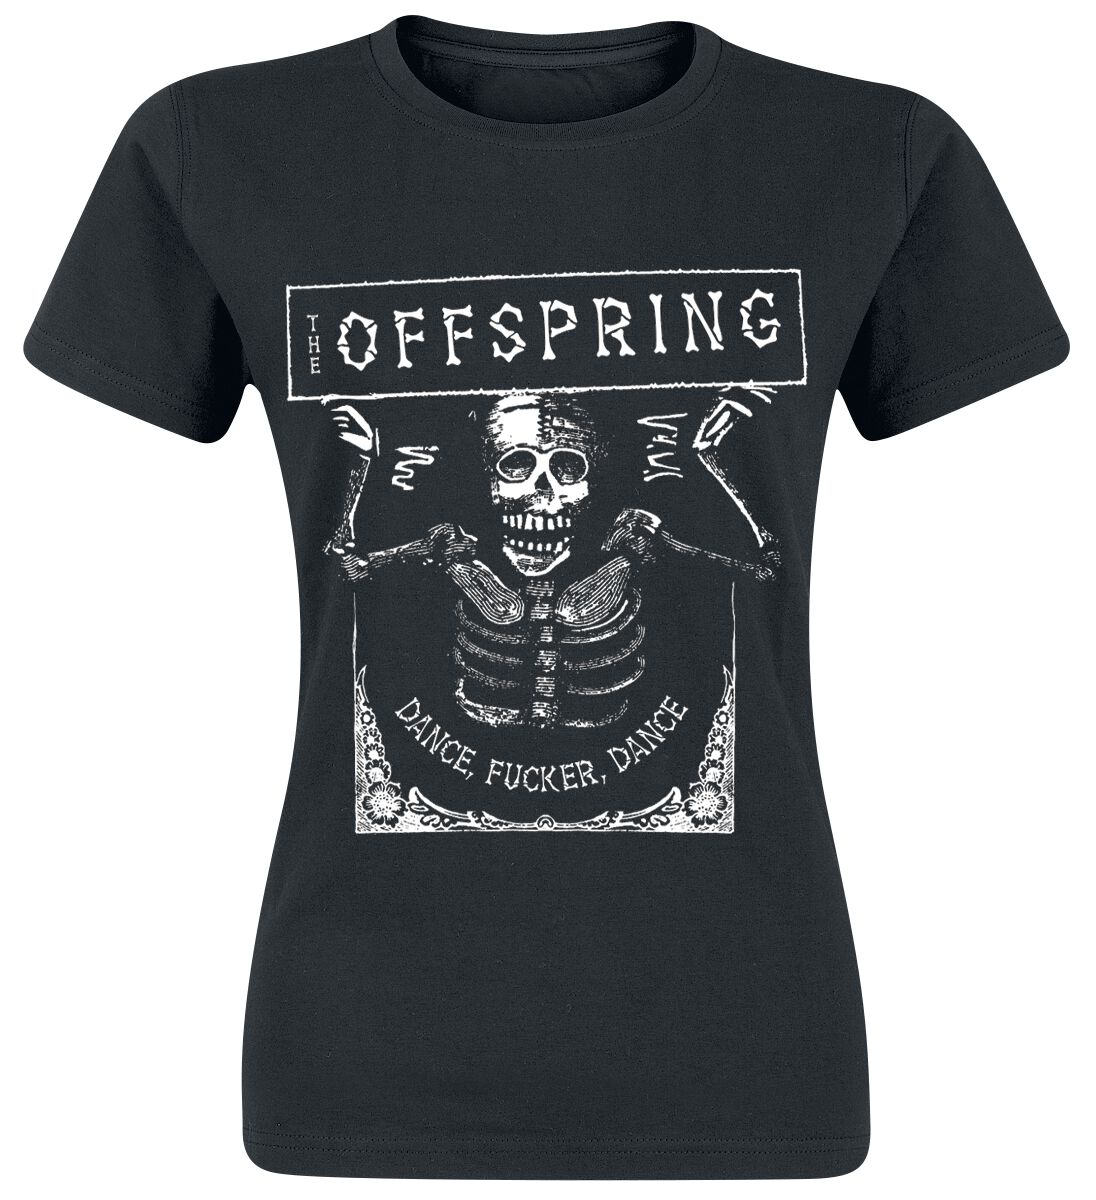 T-Shirt Manches courtes de The Offspring - Dance Fucker - S à XXL - pour Femme - noir